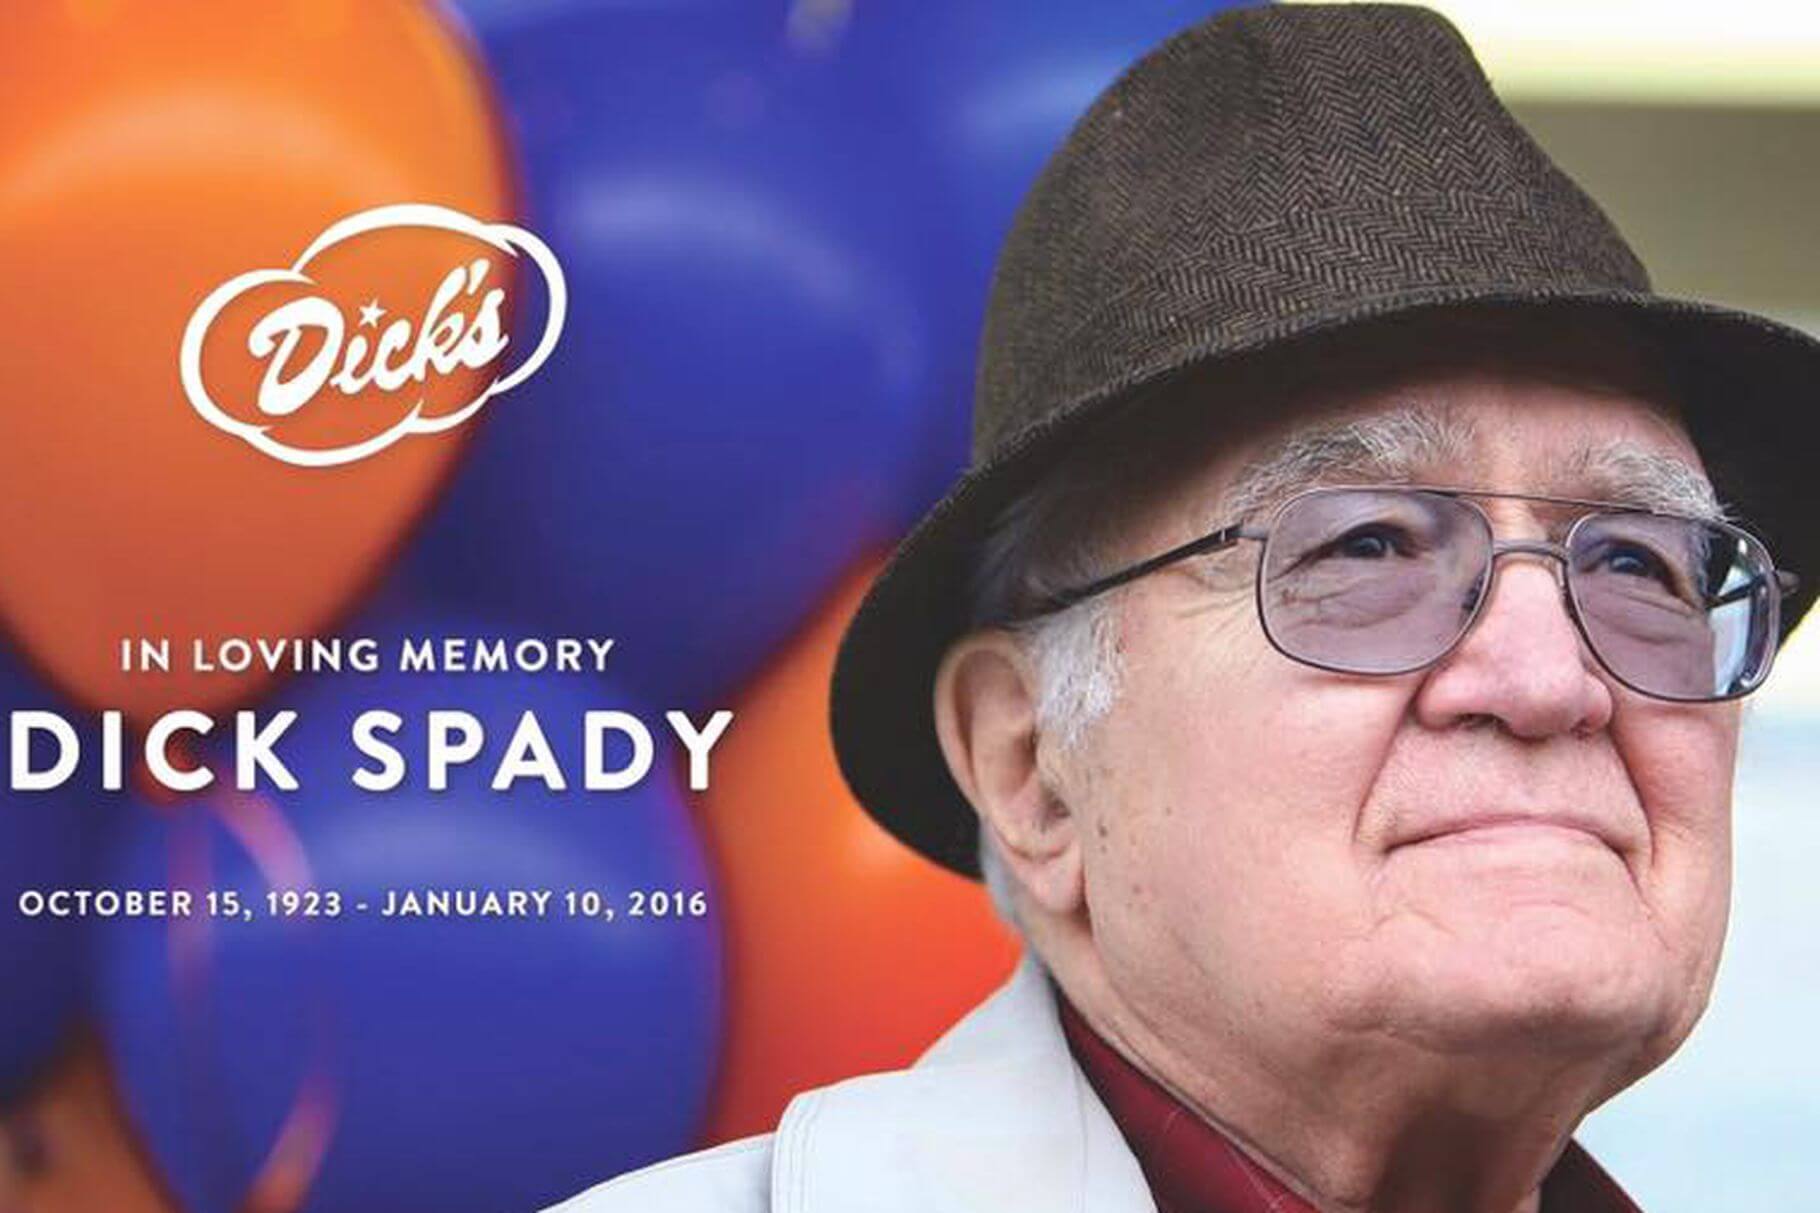 In Loving Memory of Dick Spady